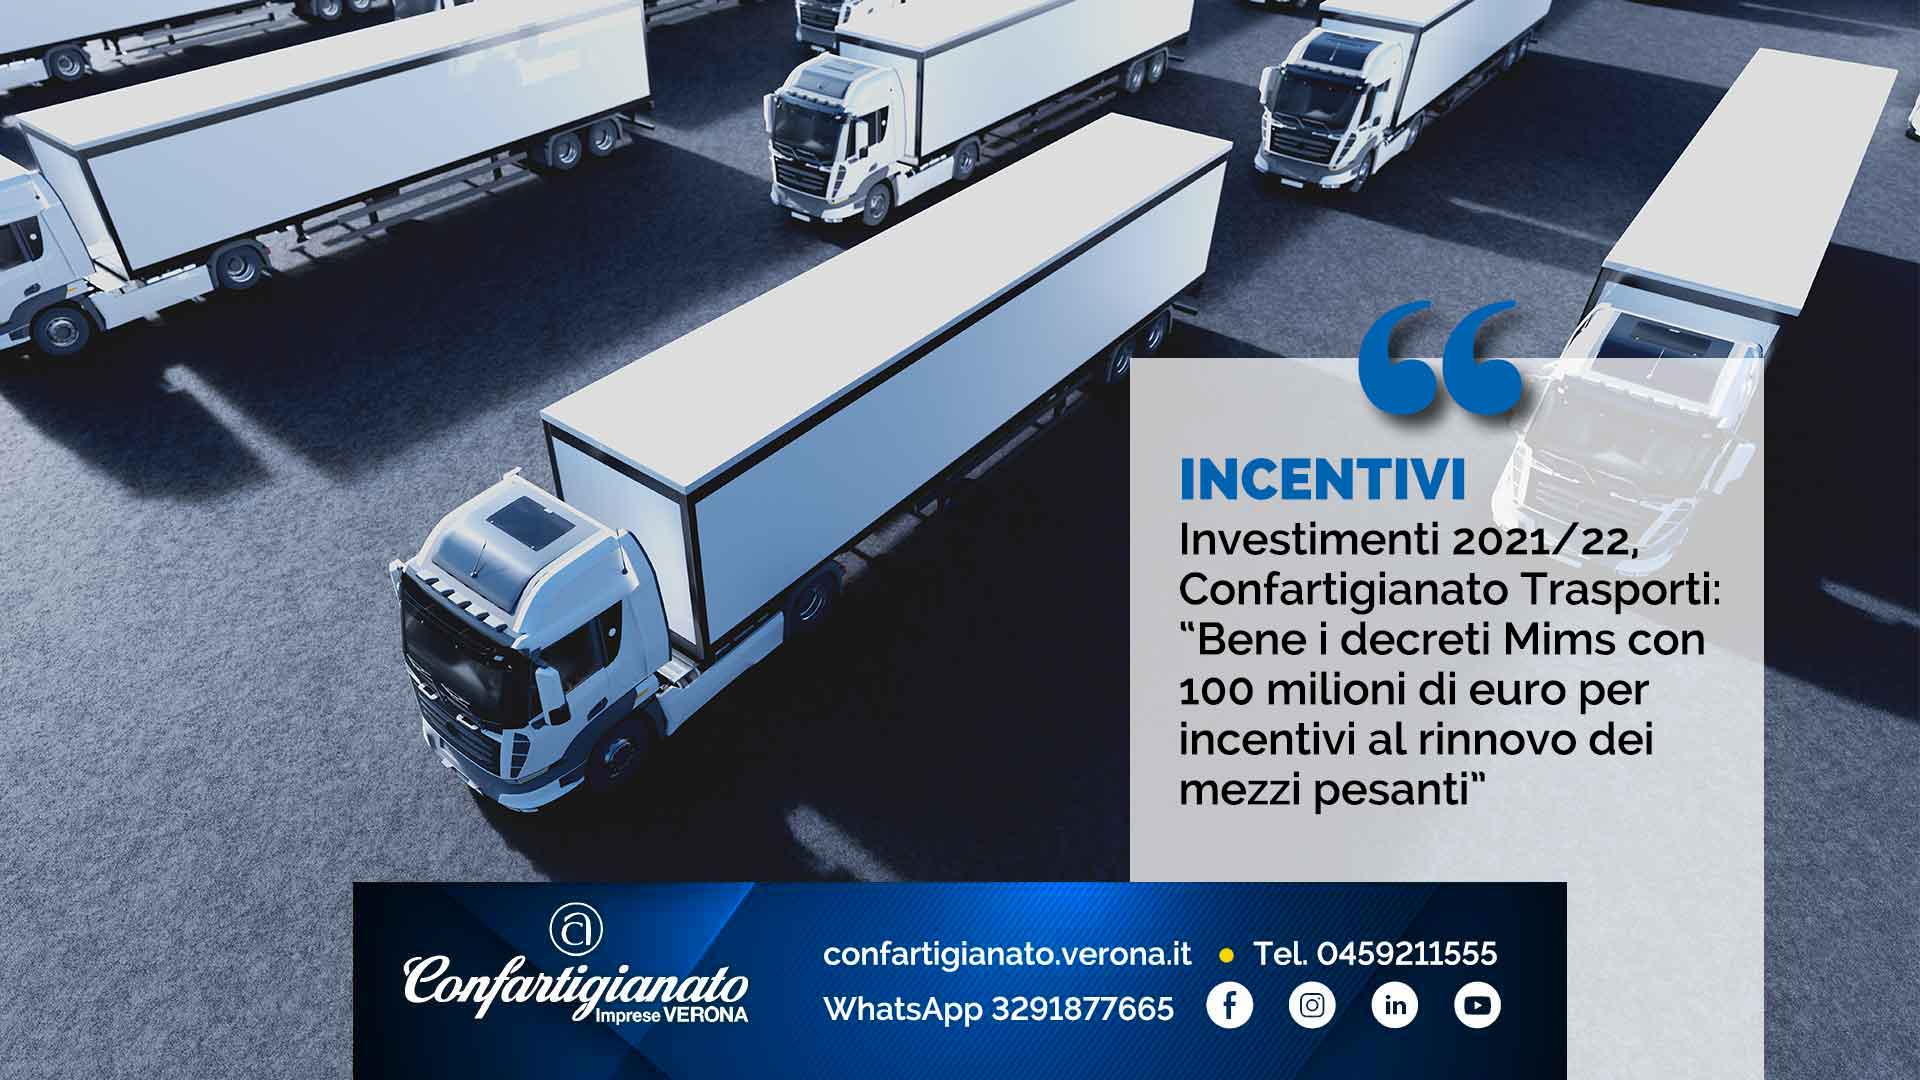 INCENTIVI – Investimenti 2021/22, Confartigianato Trasporti: “Bene i decreti Mims con 100 milioni di euro per incentivi al rinnovo dei mezzi pesanti”